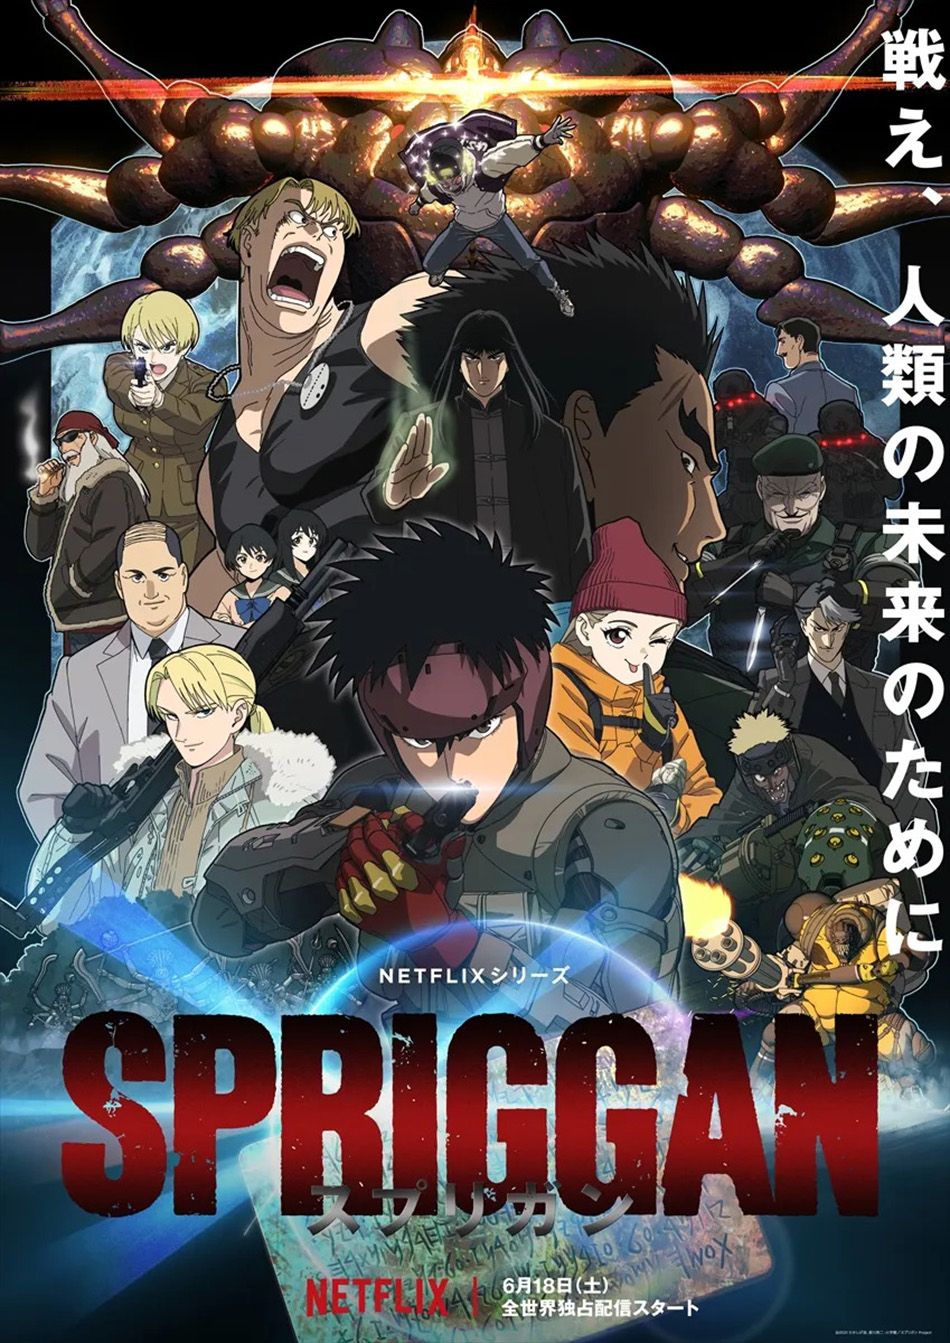 hình ảnh chính thức anime Spriggan 